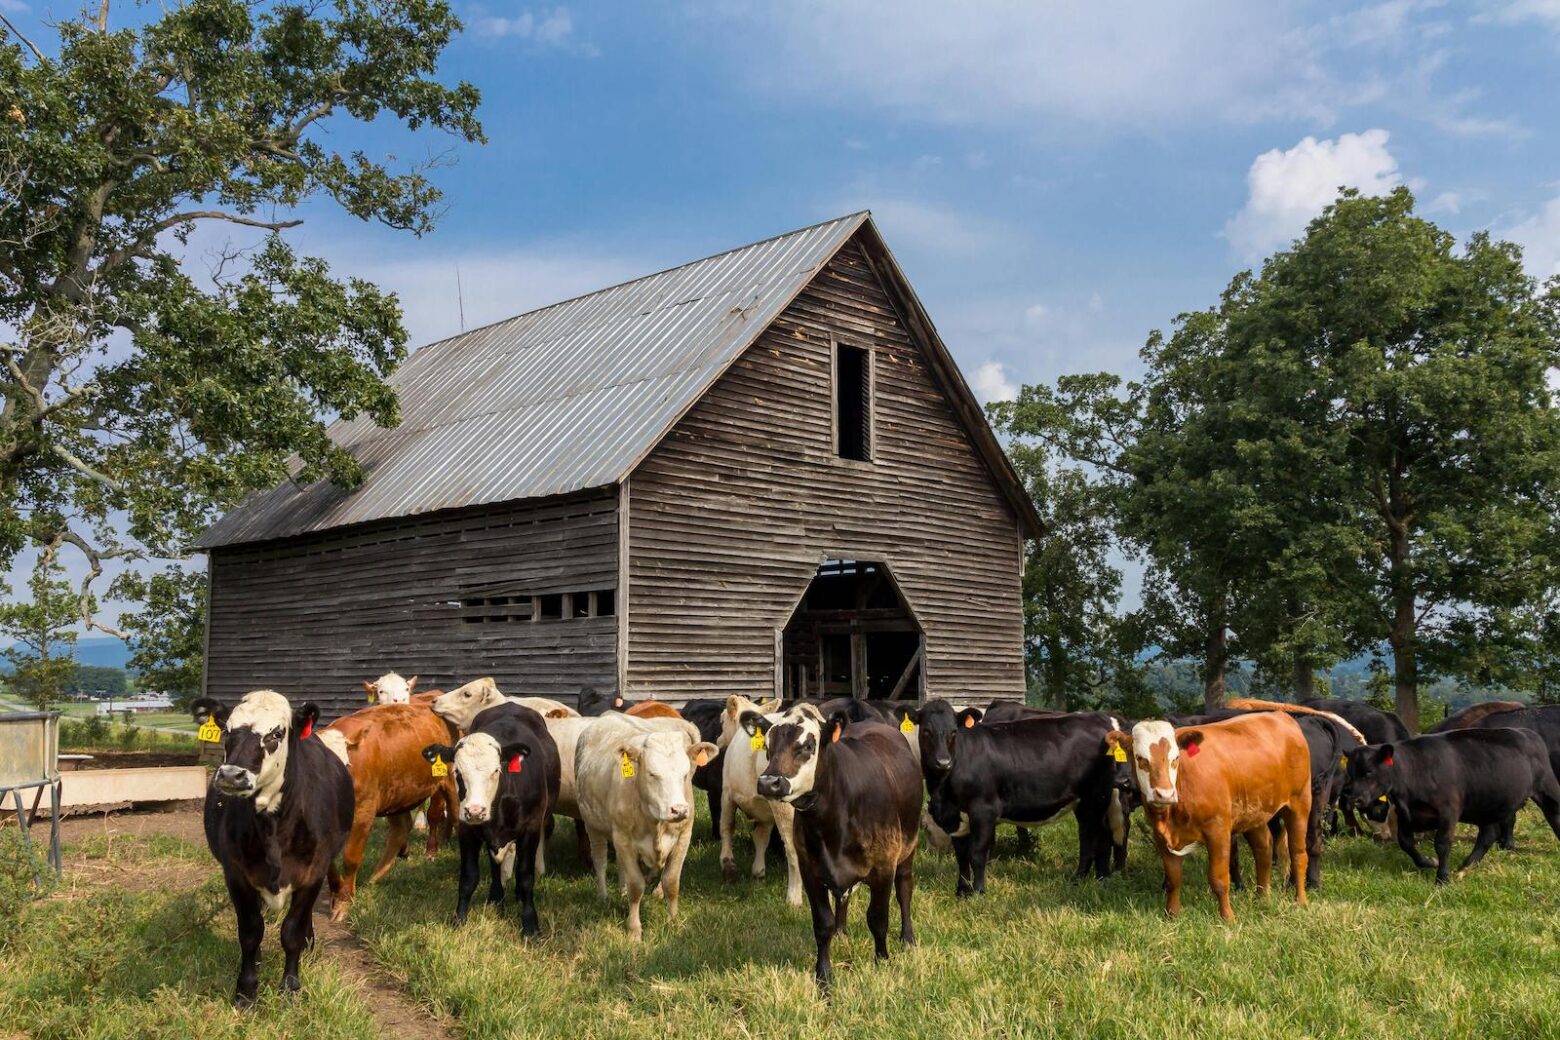 cows on the farm with a barn